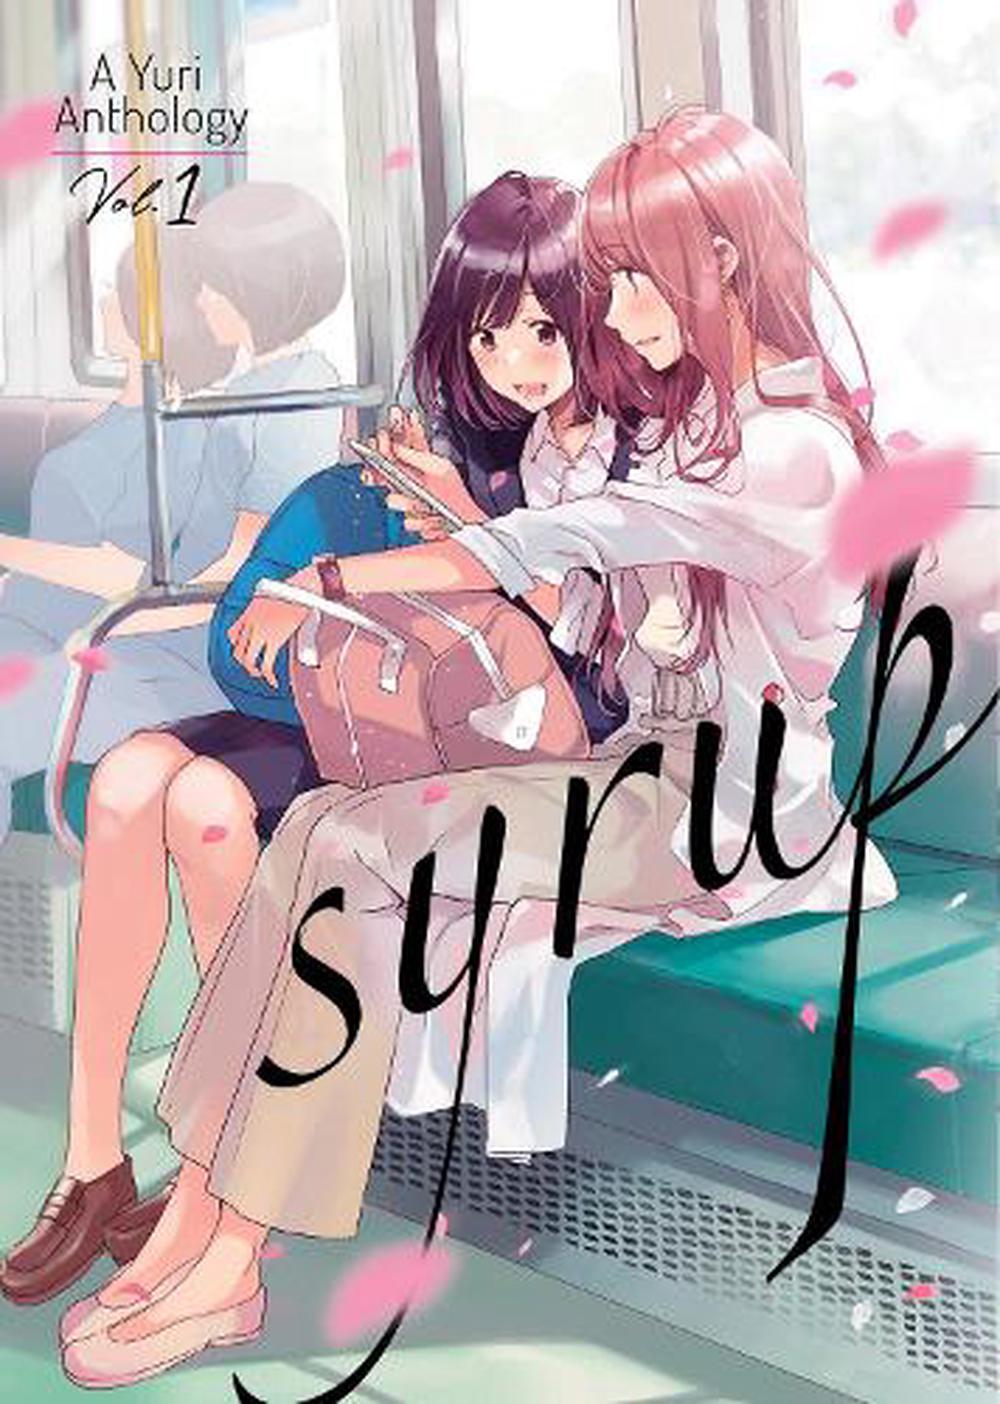 Syrup Yuri Anthology By Milk Morinaga English Paperback Book Free 